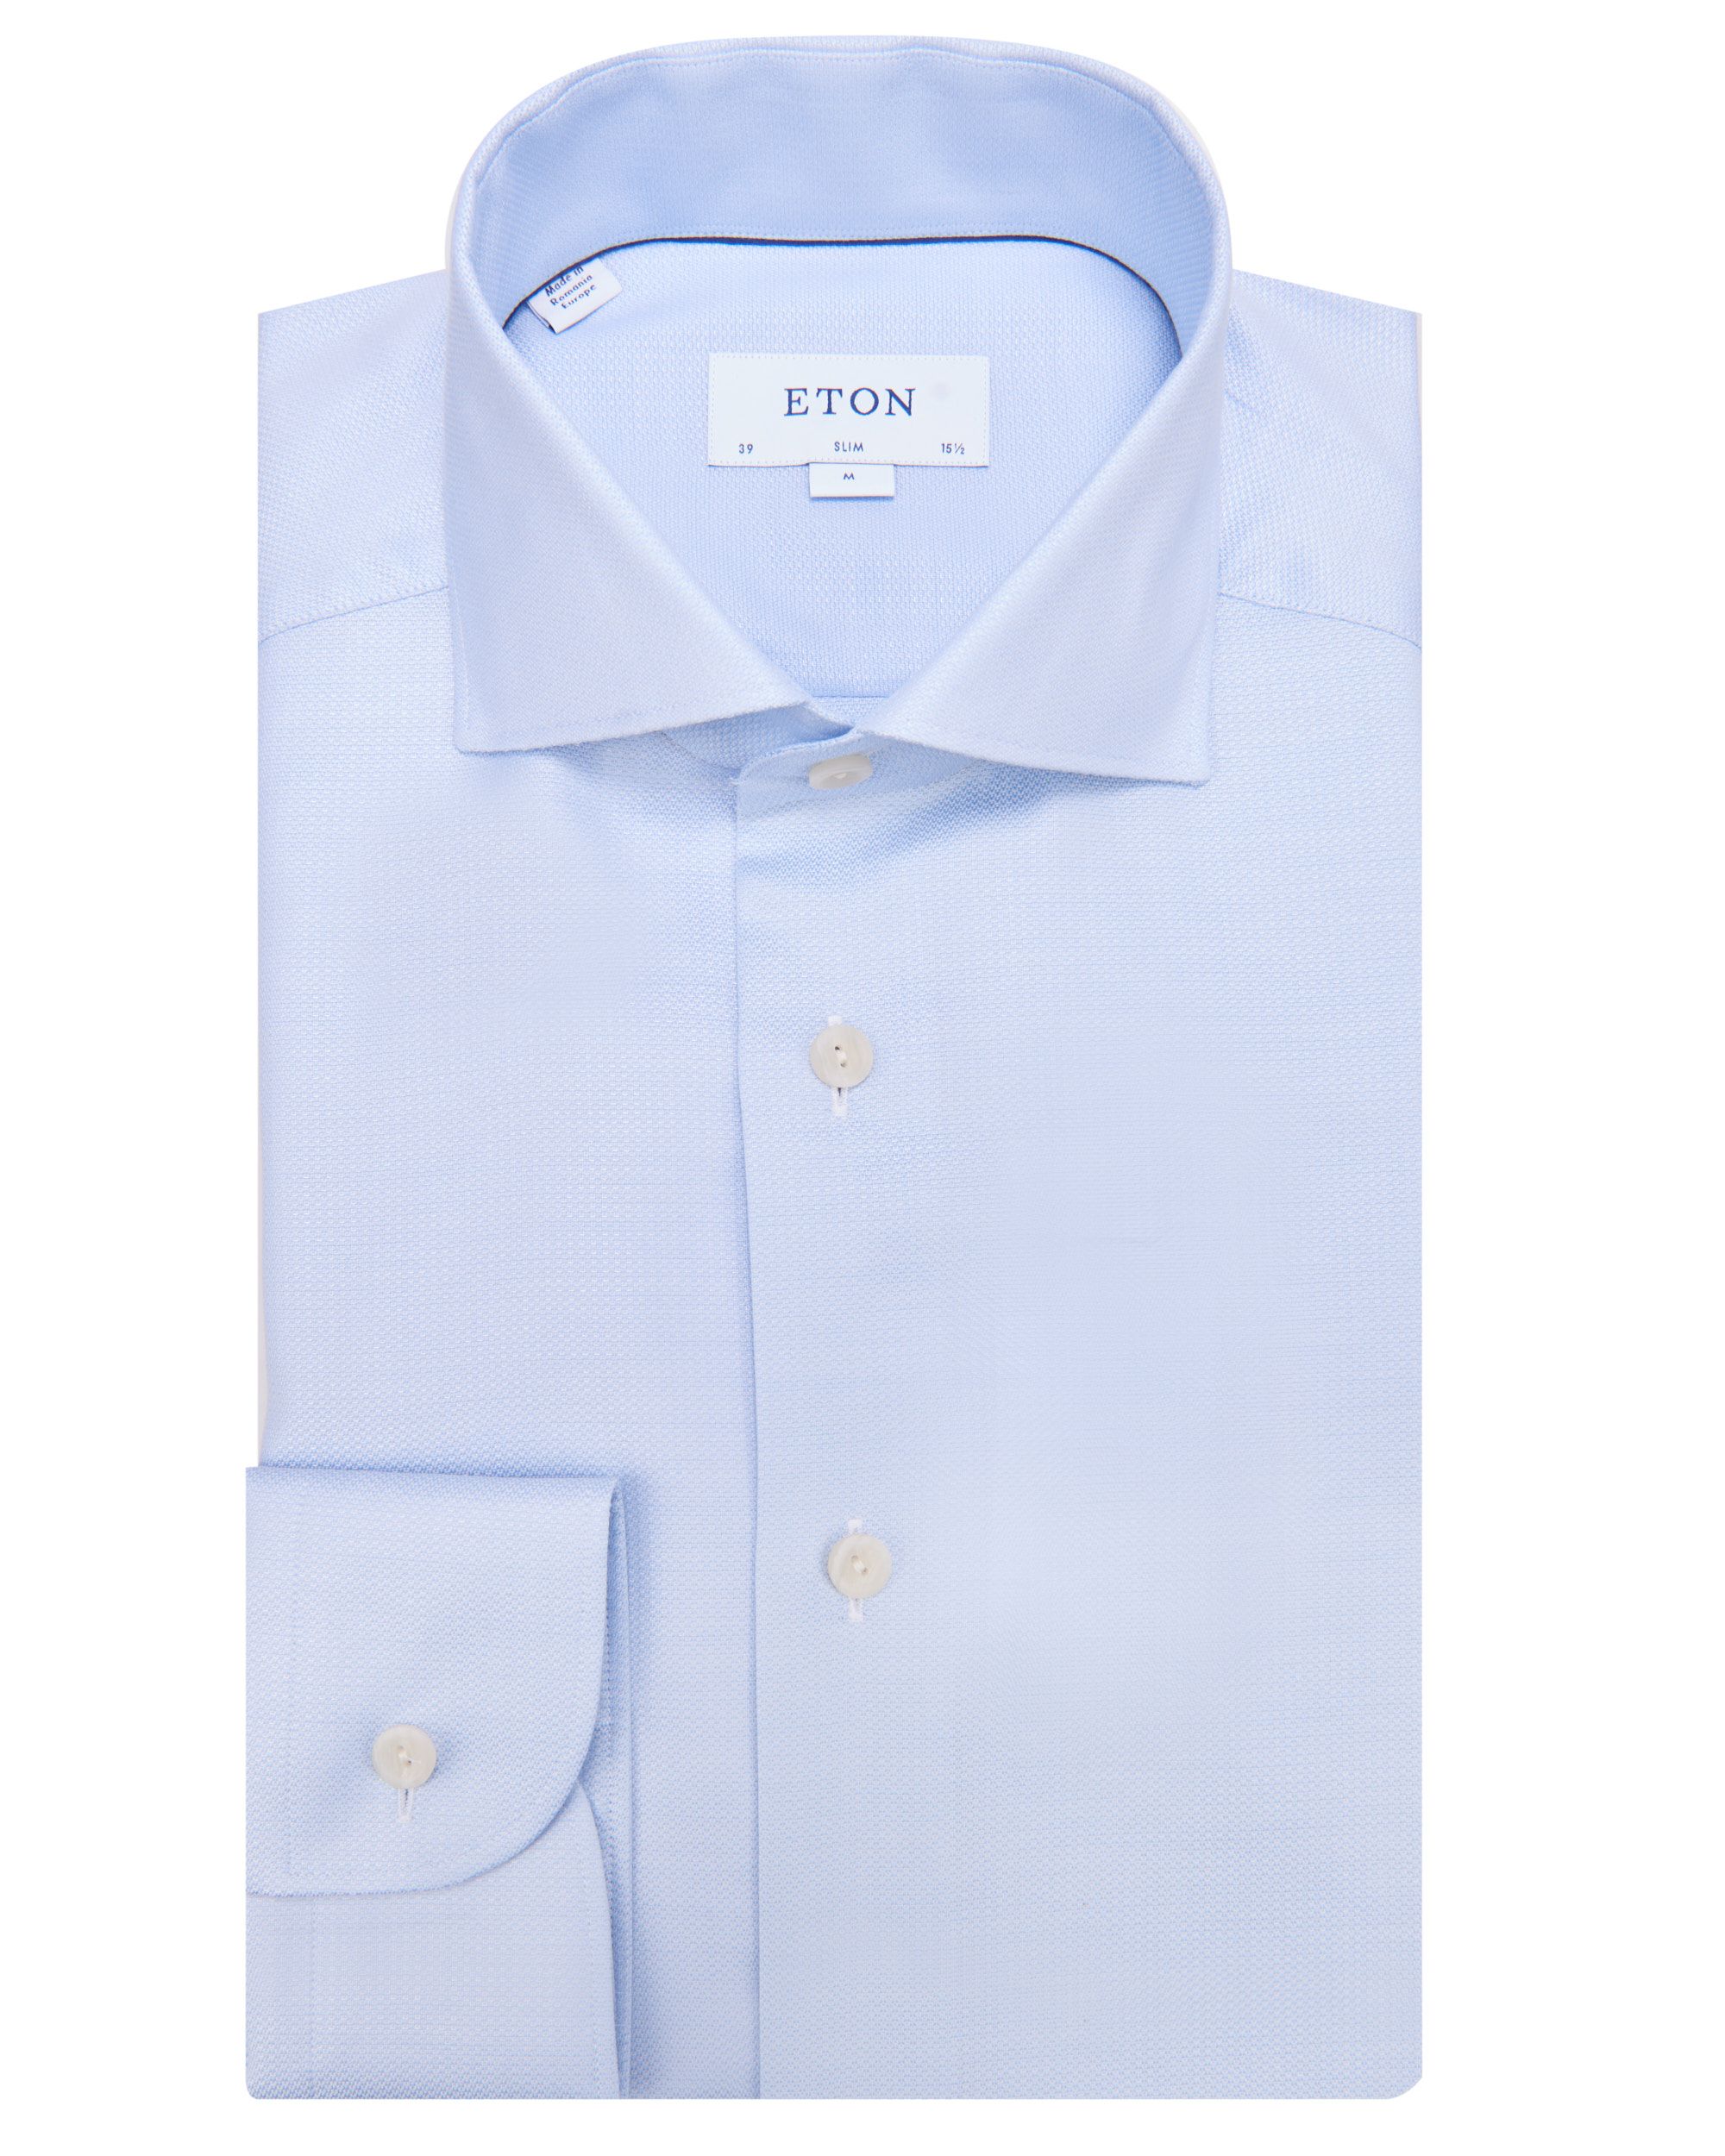 ETON Overhemd LM Blauw 078827-001-37/38